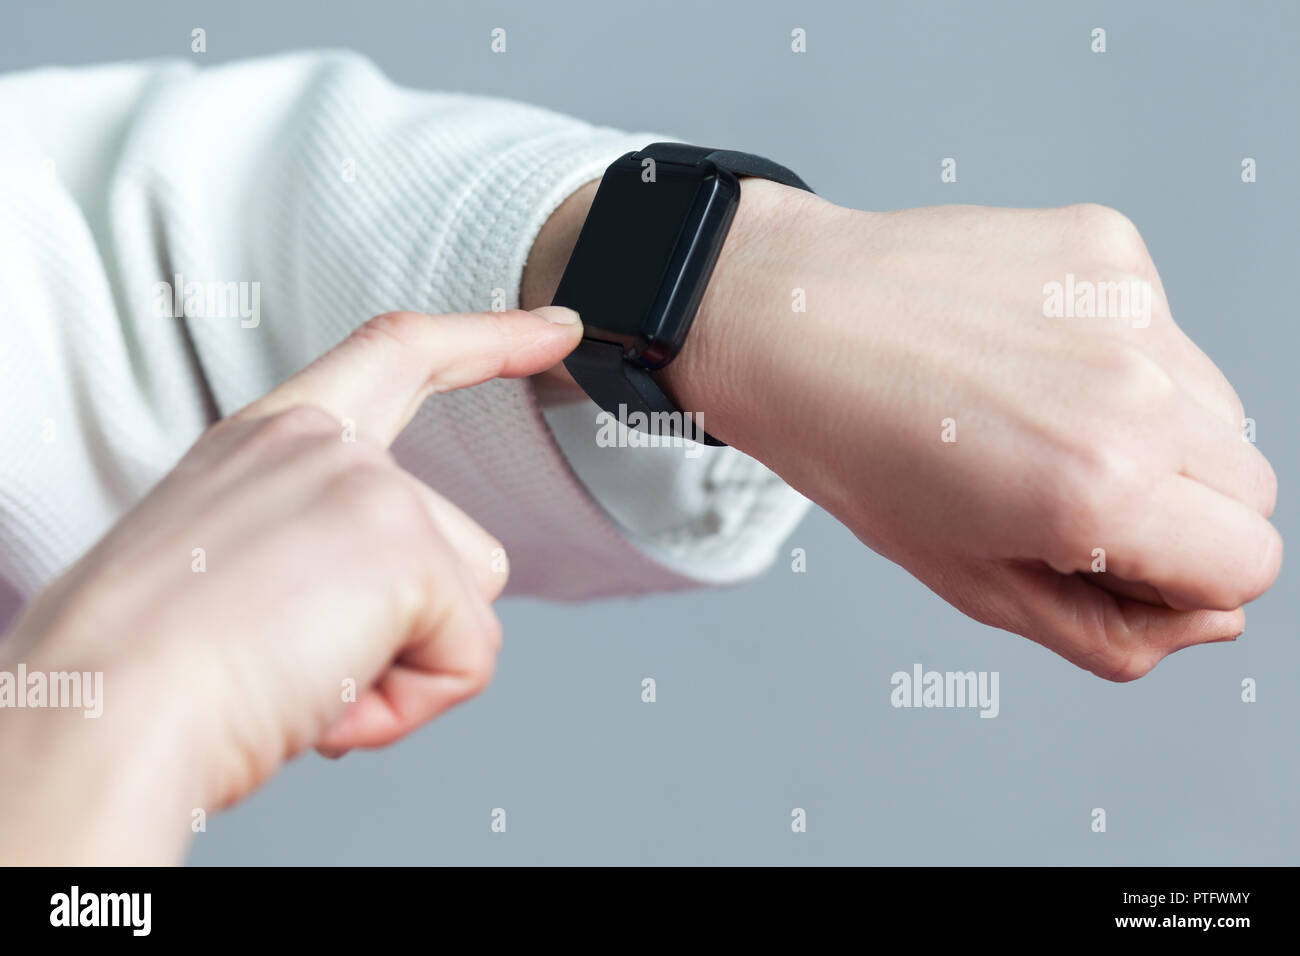 Lado femenino con smartwatch son toching comprobando con el dedo y quemar calorías en smart watch pulsera de dispositivo. Deporte y salud concepto. Interior Foto de stock